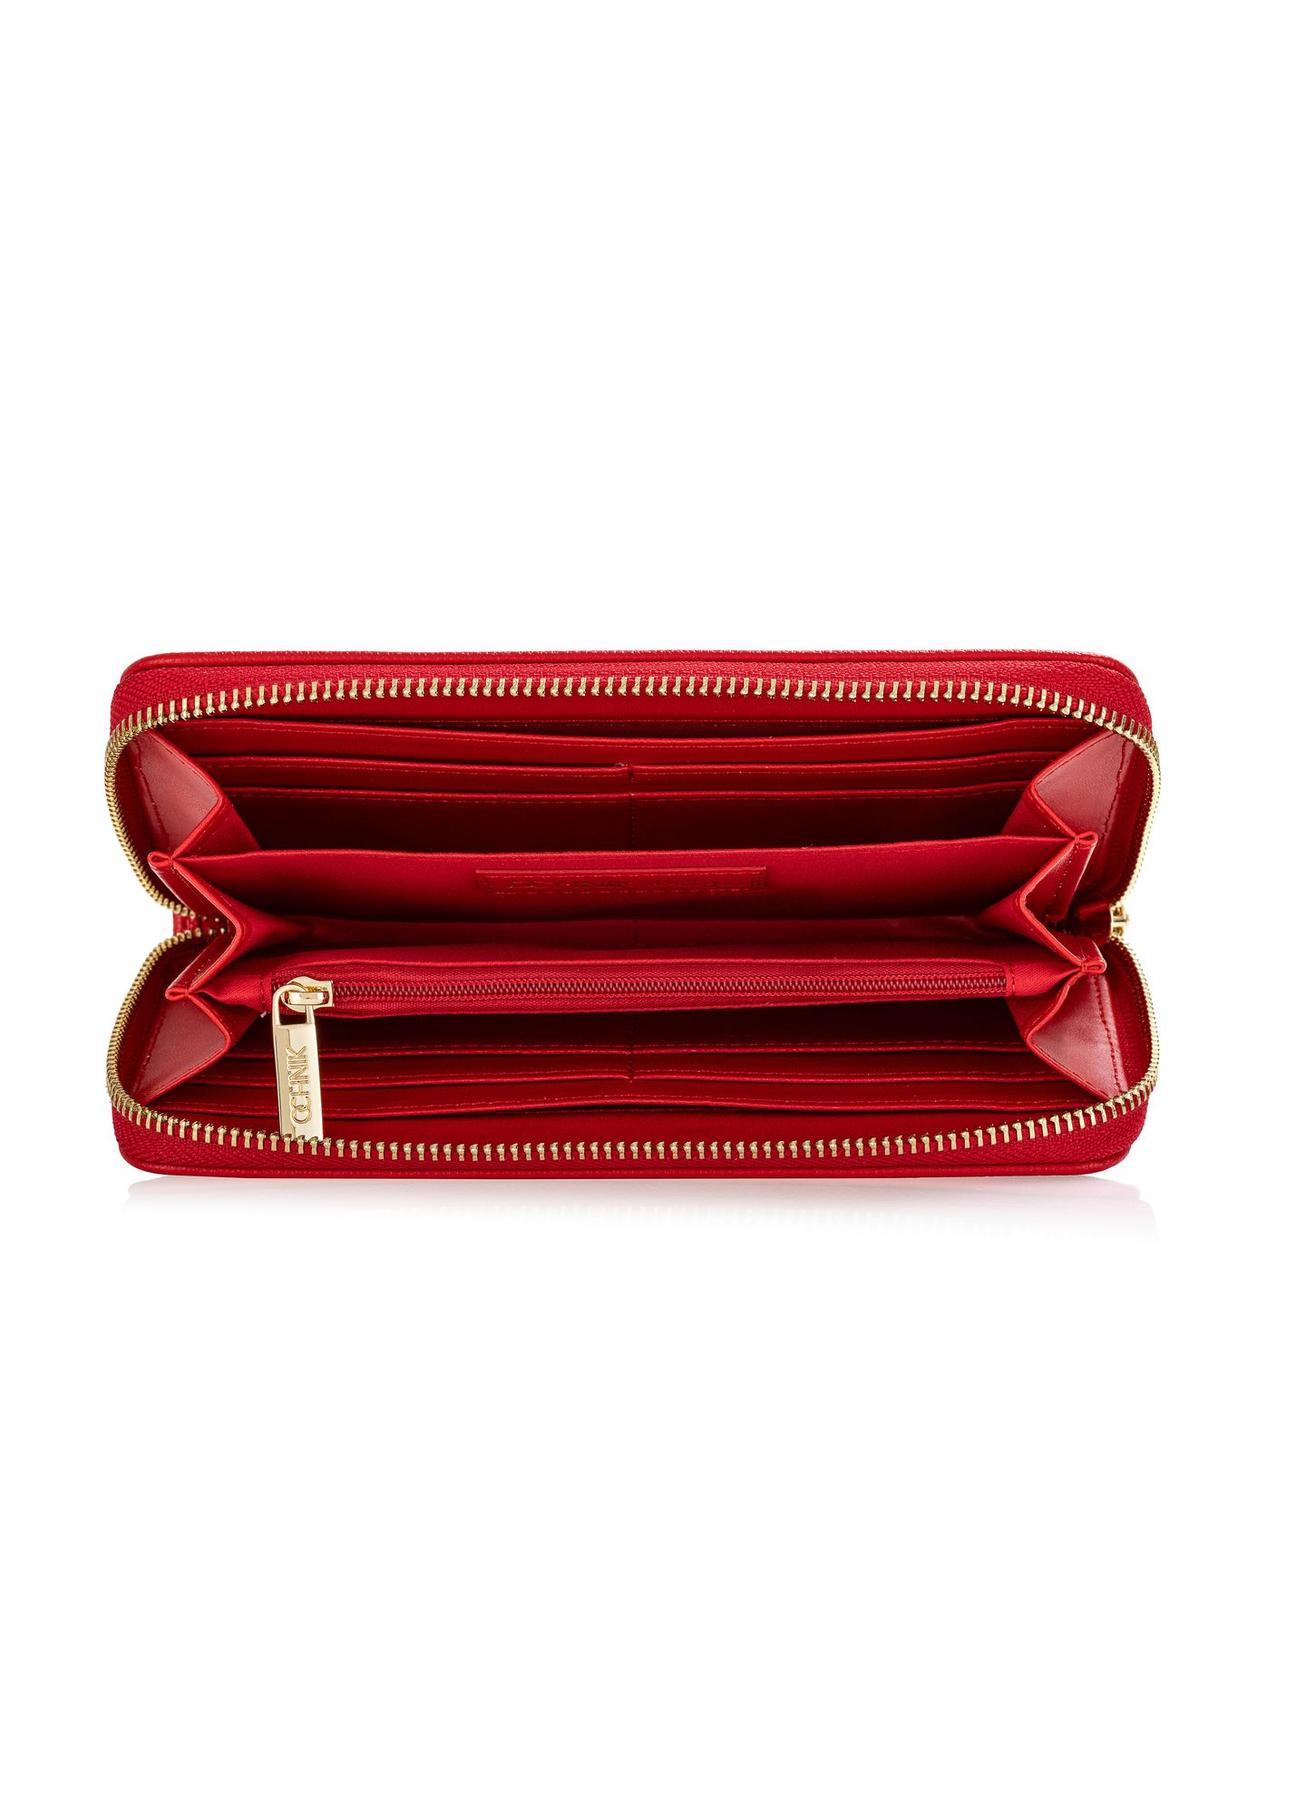 Duży czerwony portfel damski z logo POREC-0368-42(W24)